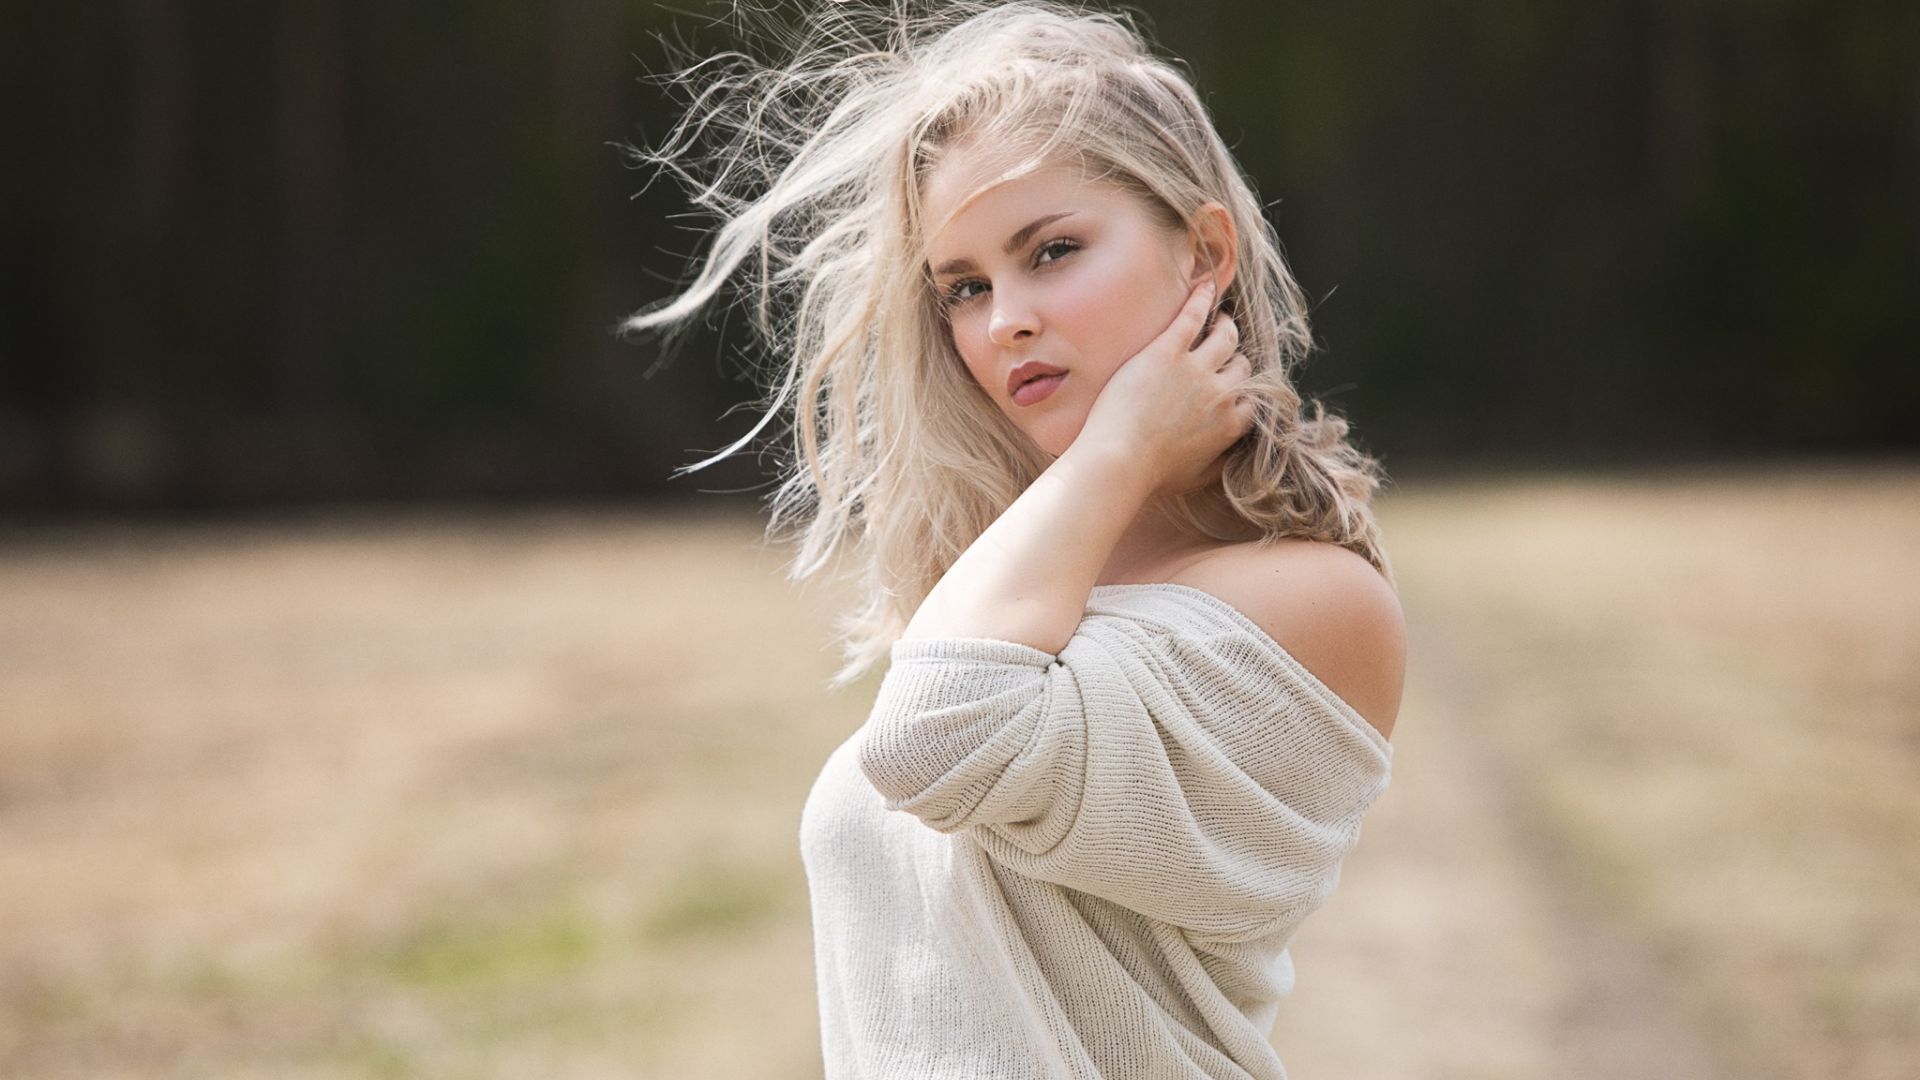 Wallpaper Blonde girl, outdoor, photoshoot